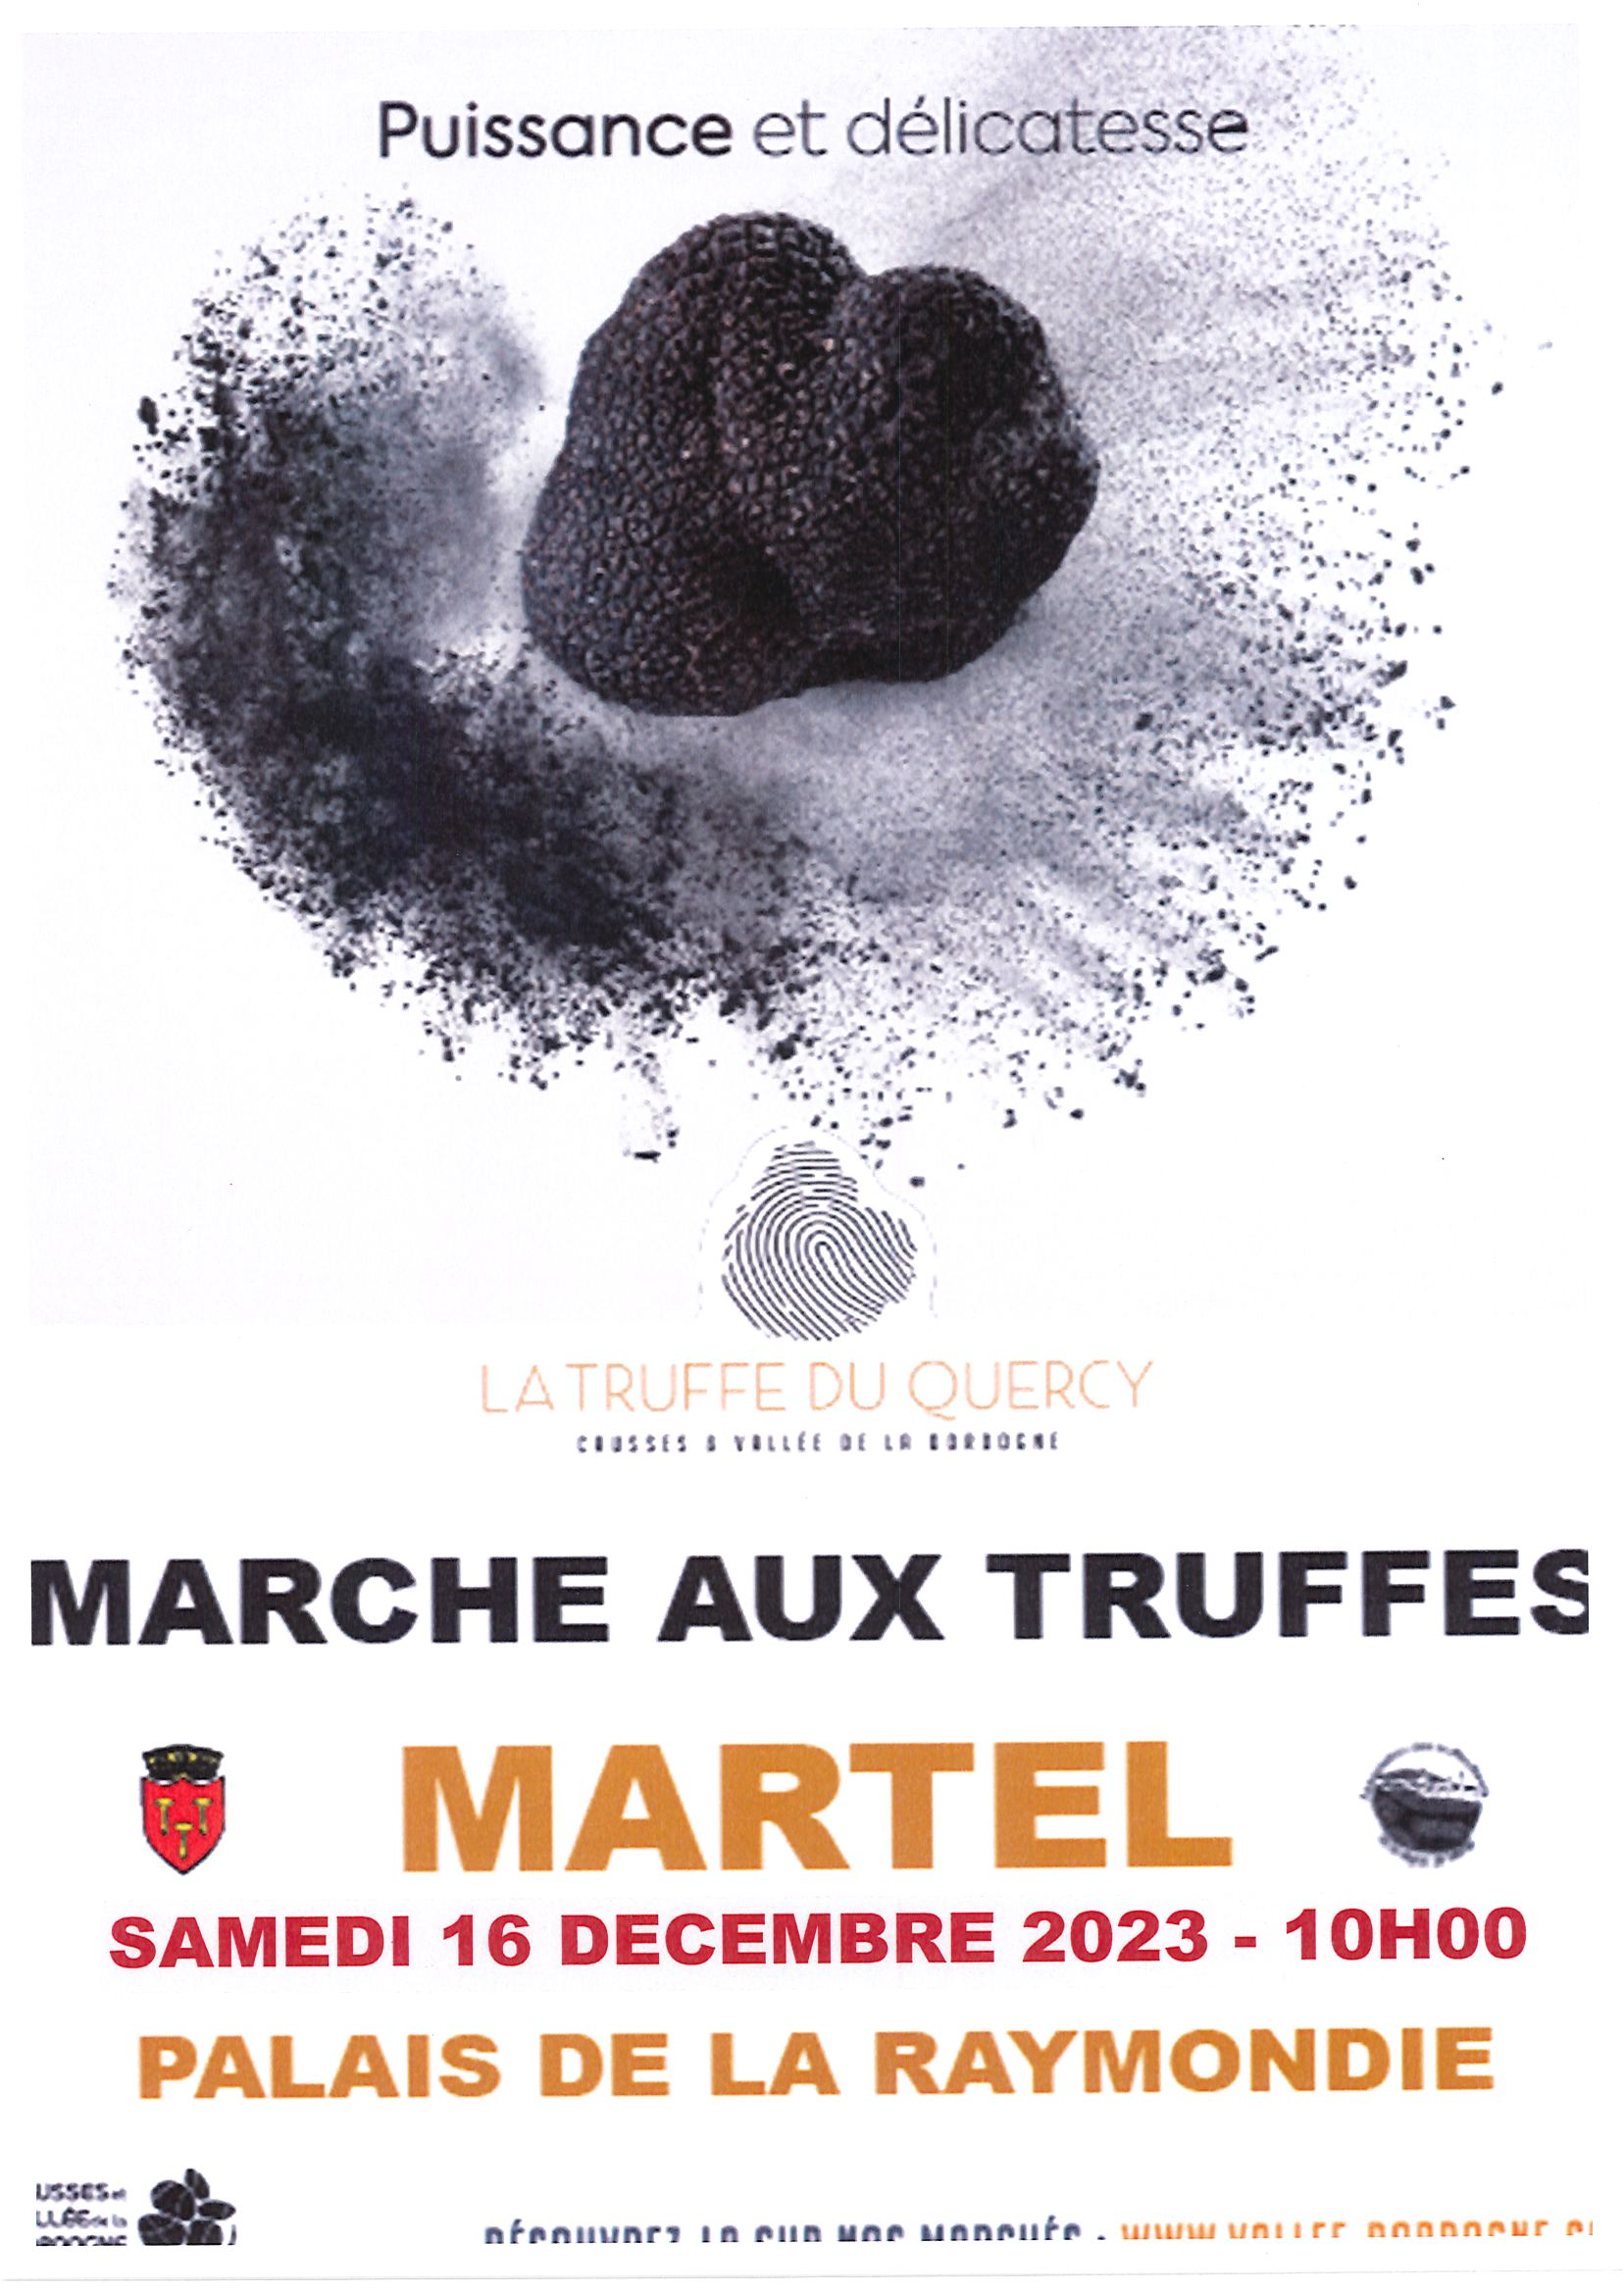 Marché aux truffes de Martel